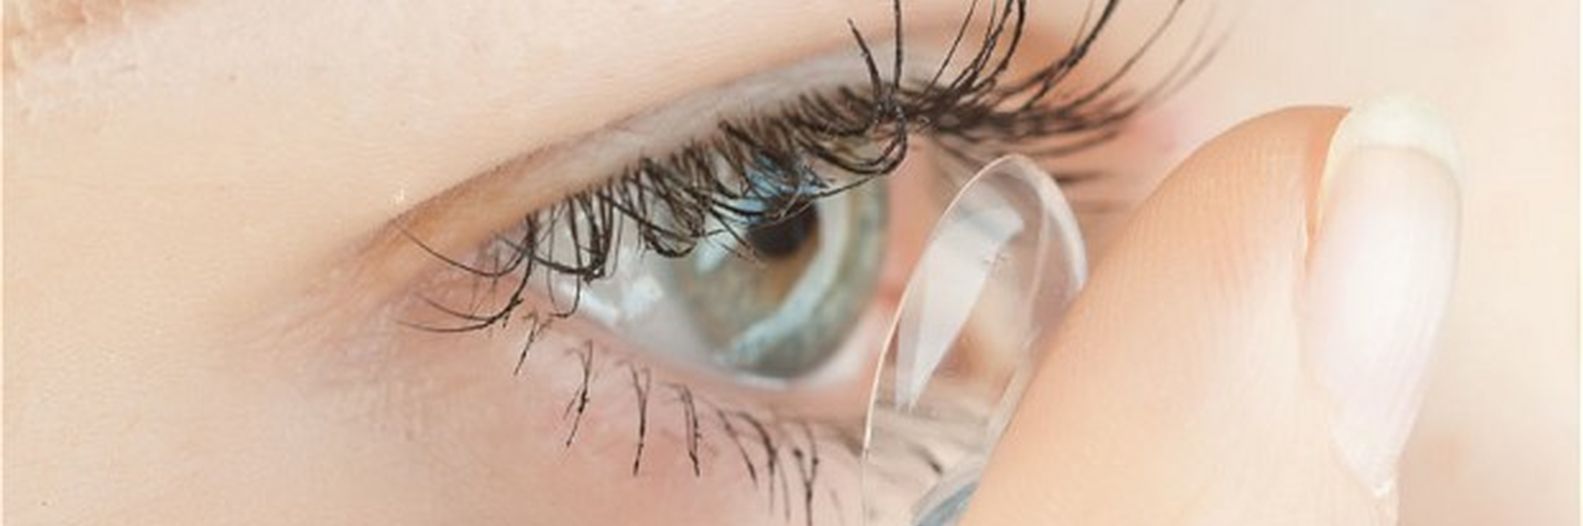 Avantages des lentilles de contact : tout ce que vous devez savoir